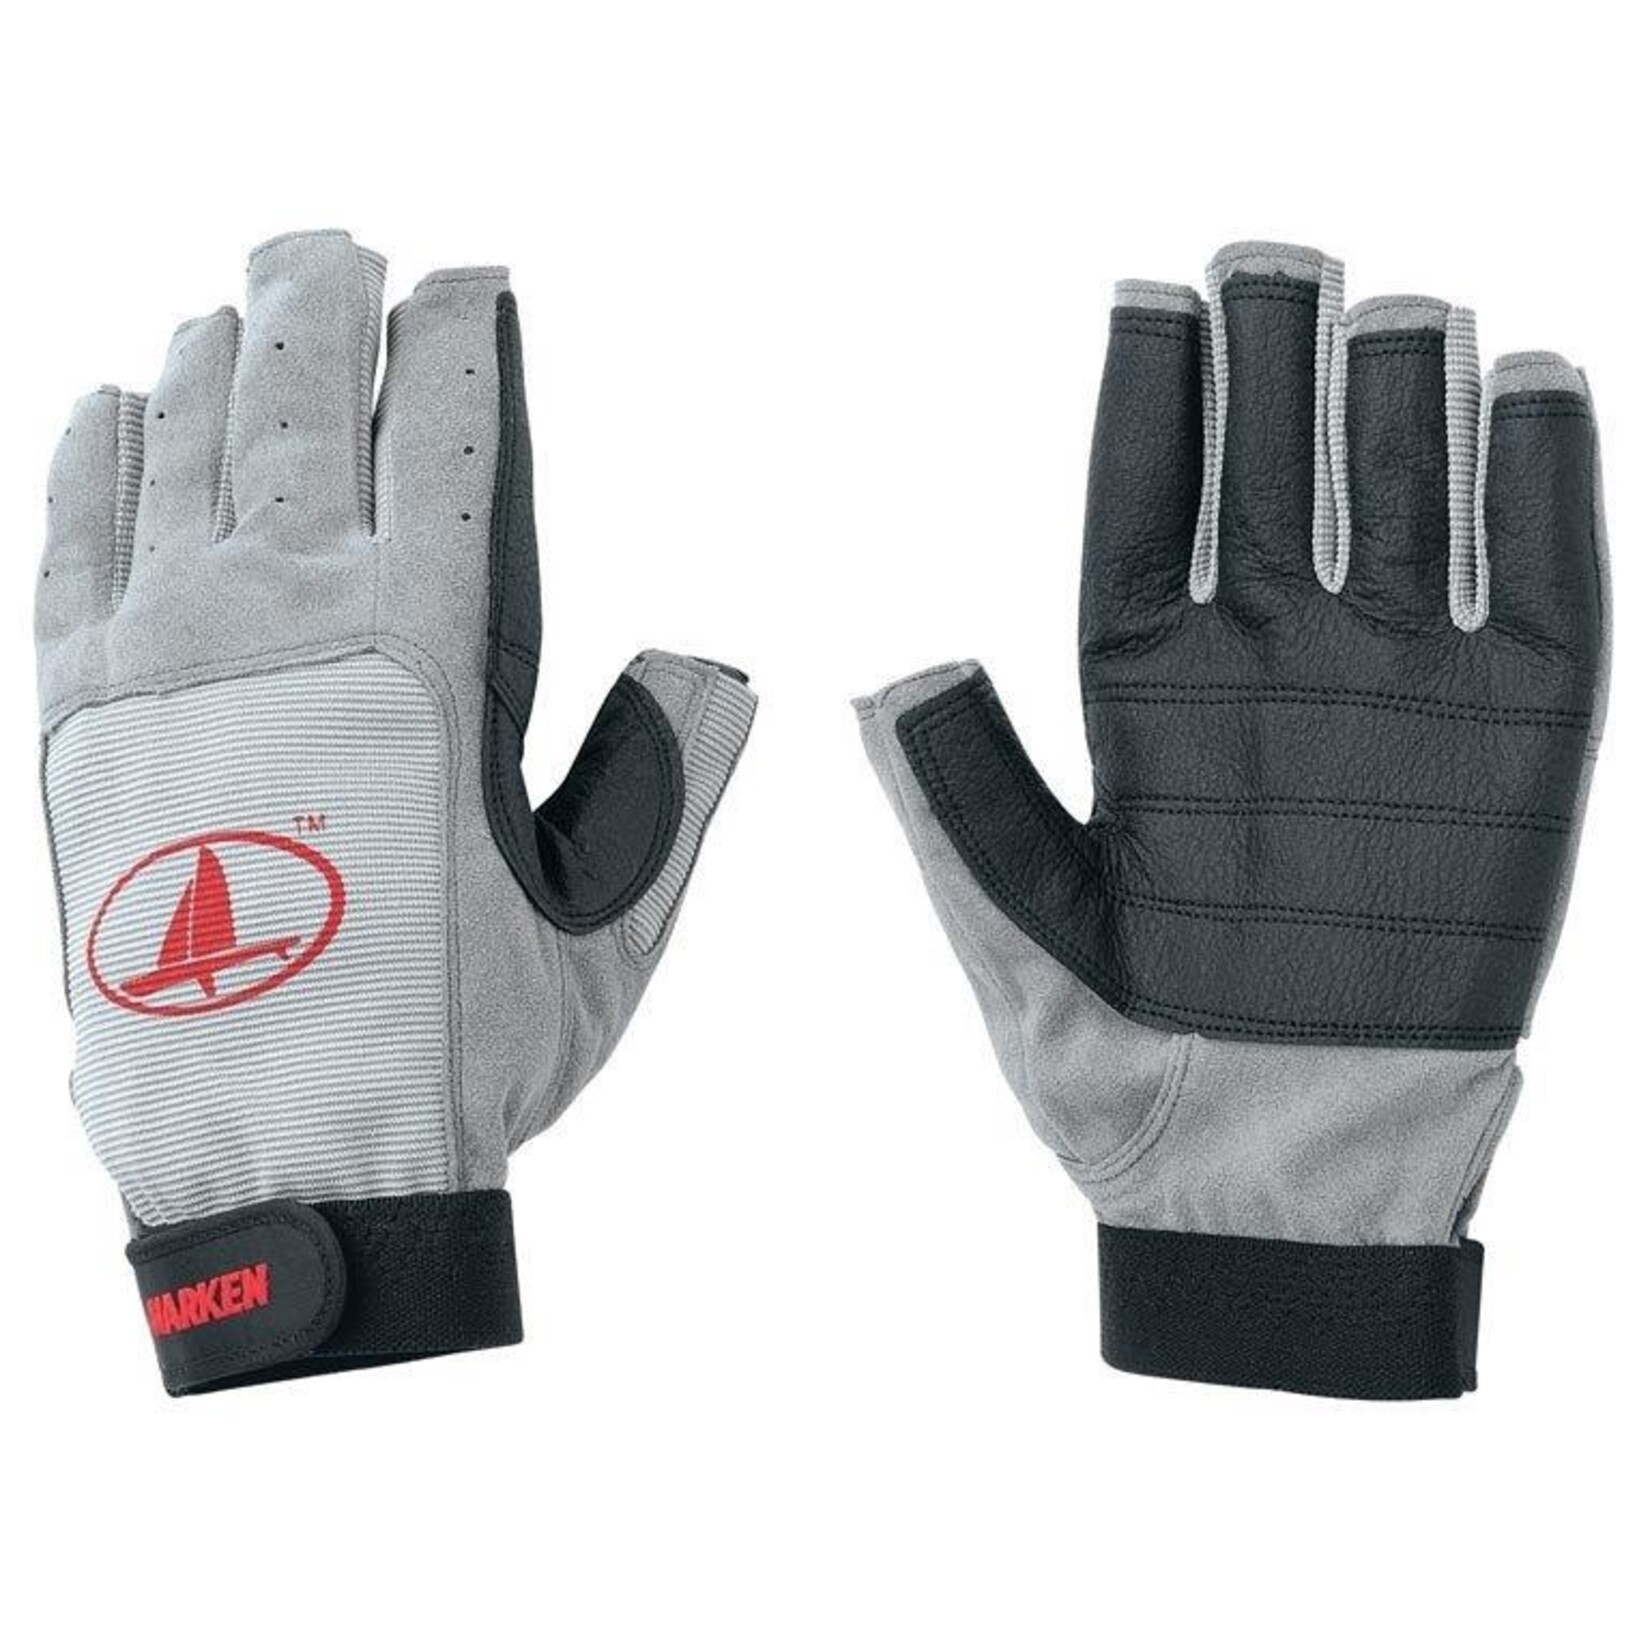 Harken 3/4 Fingers glove  S